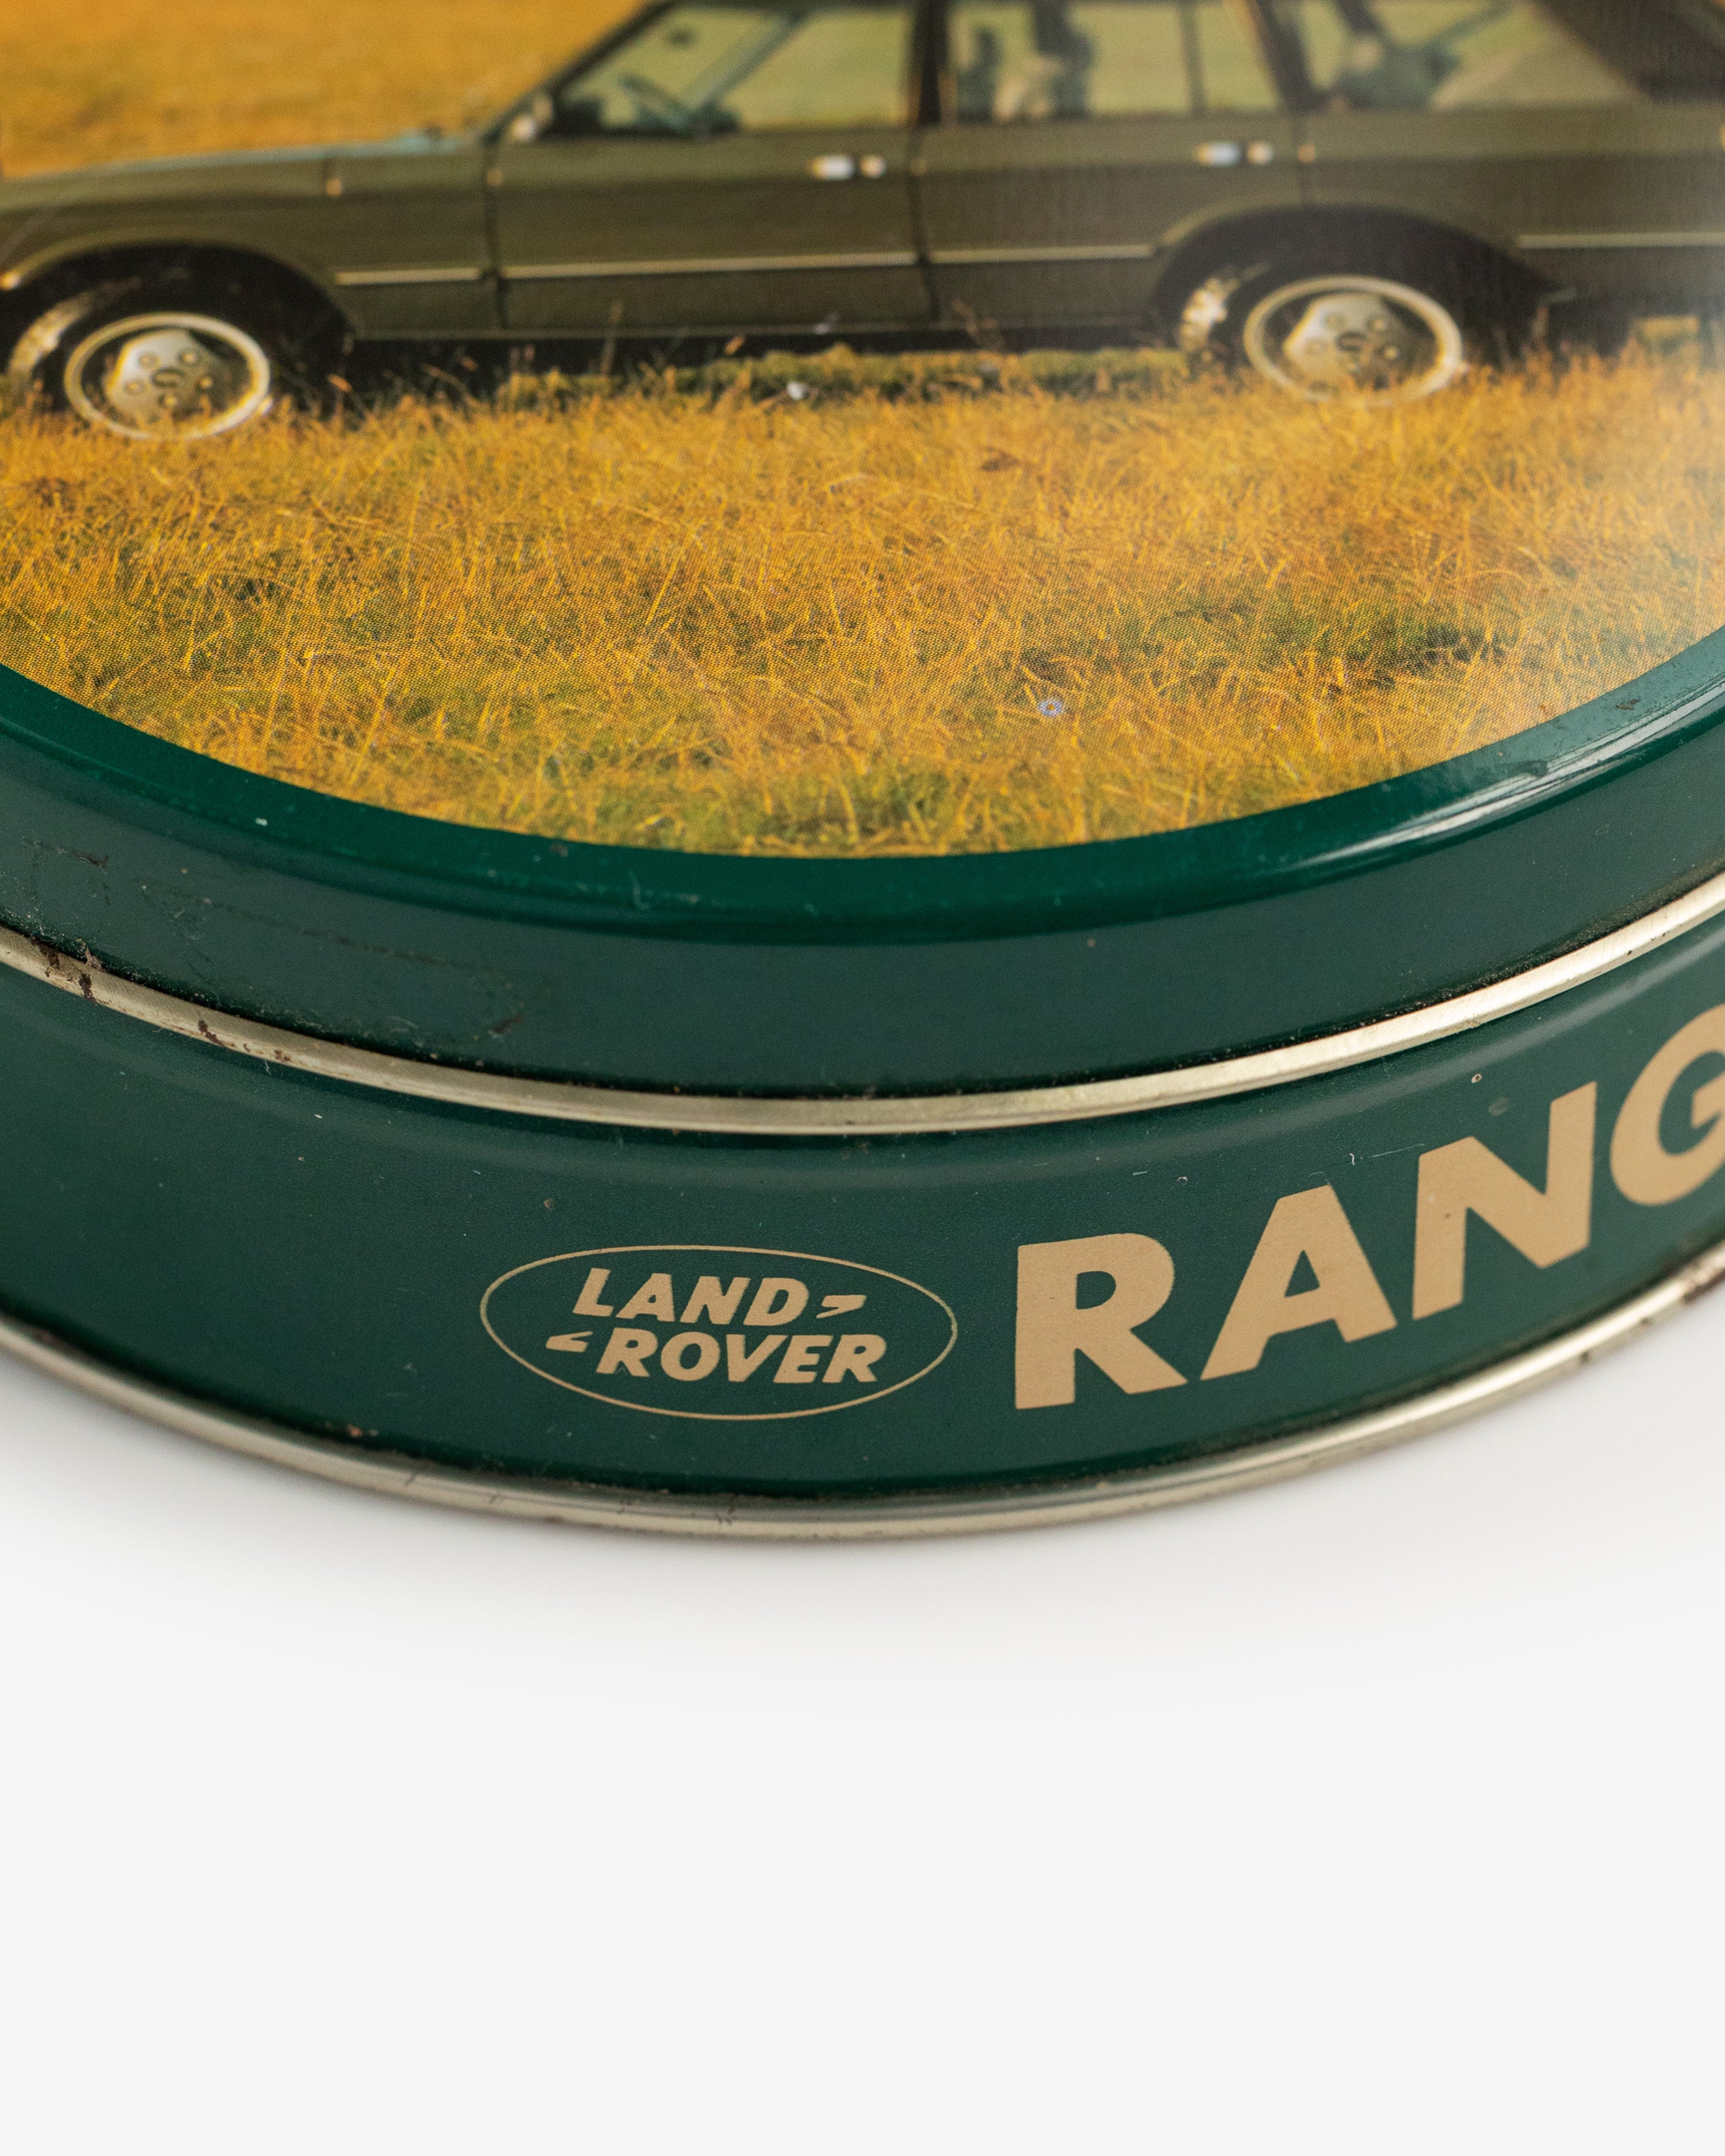 Vintage Range Rover Tin